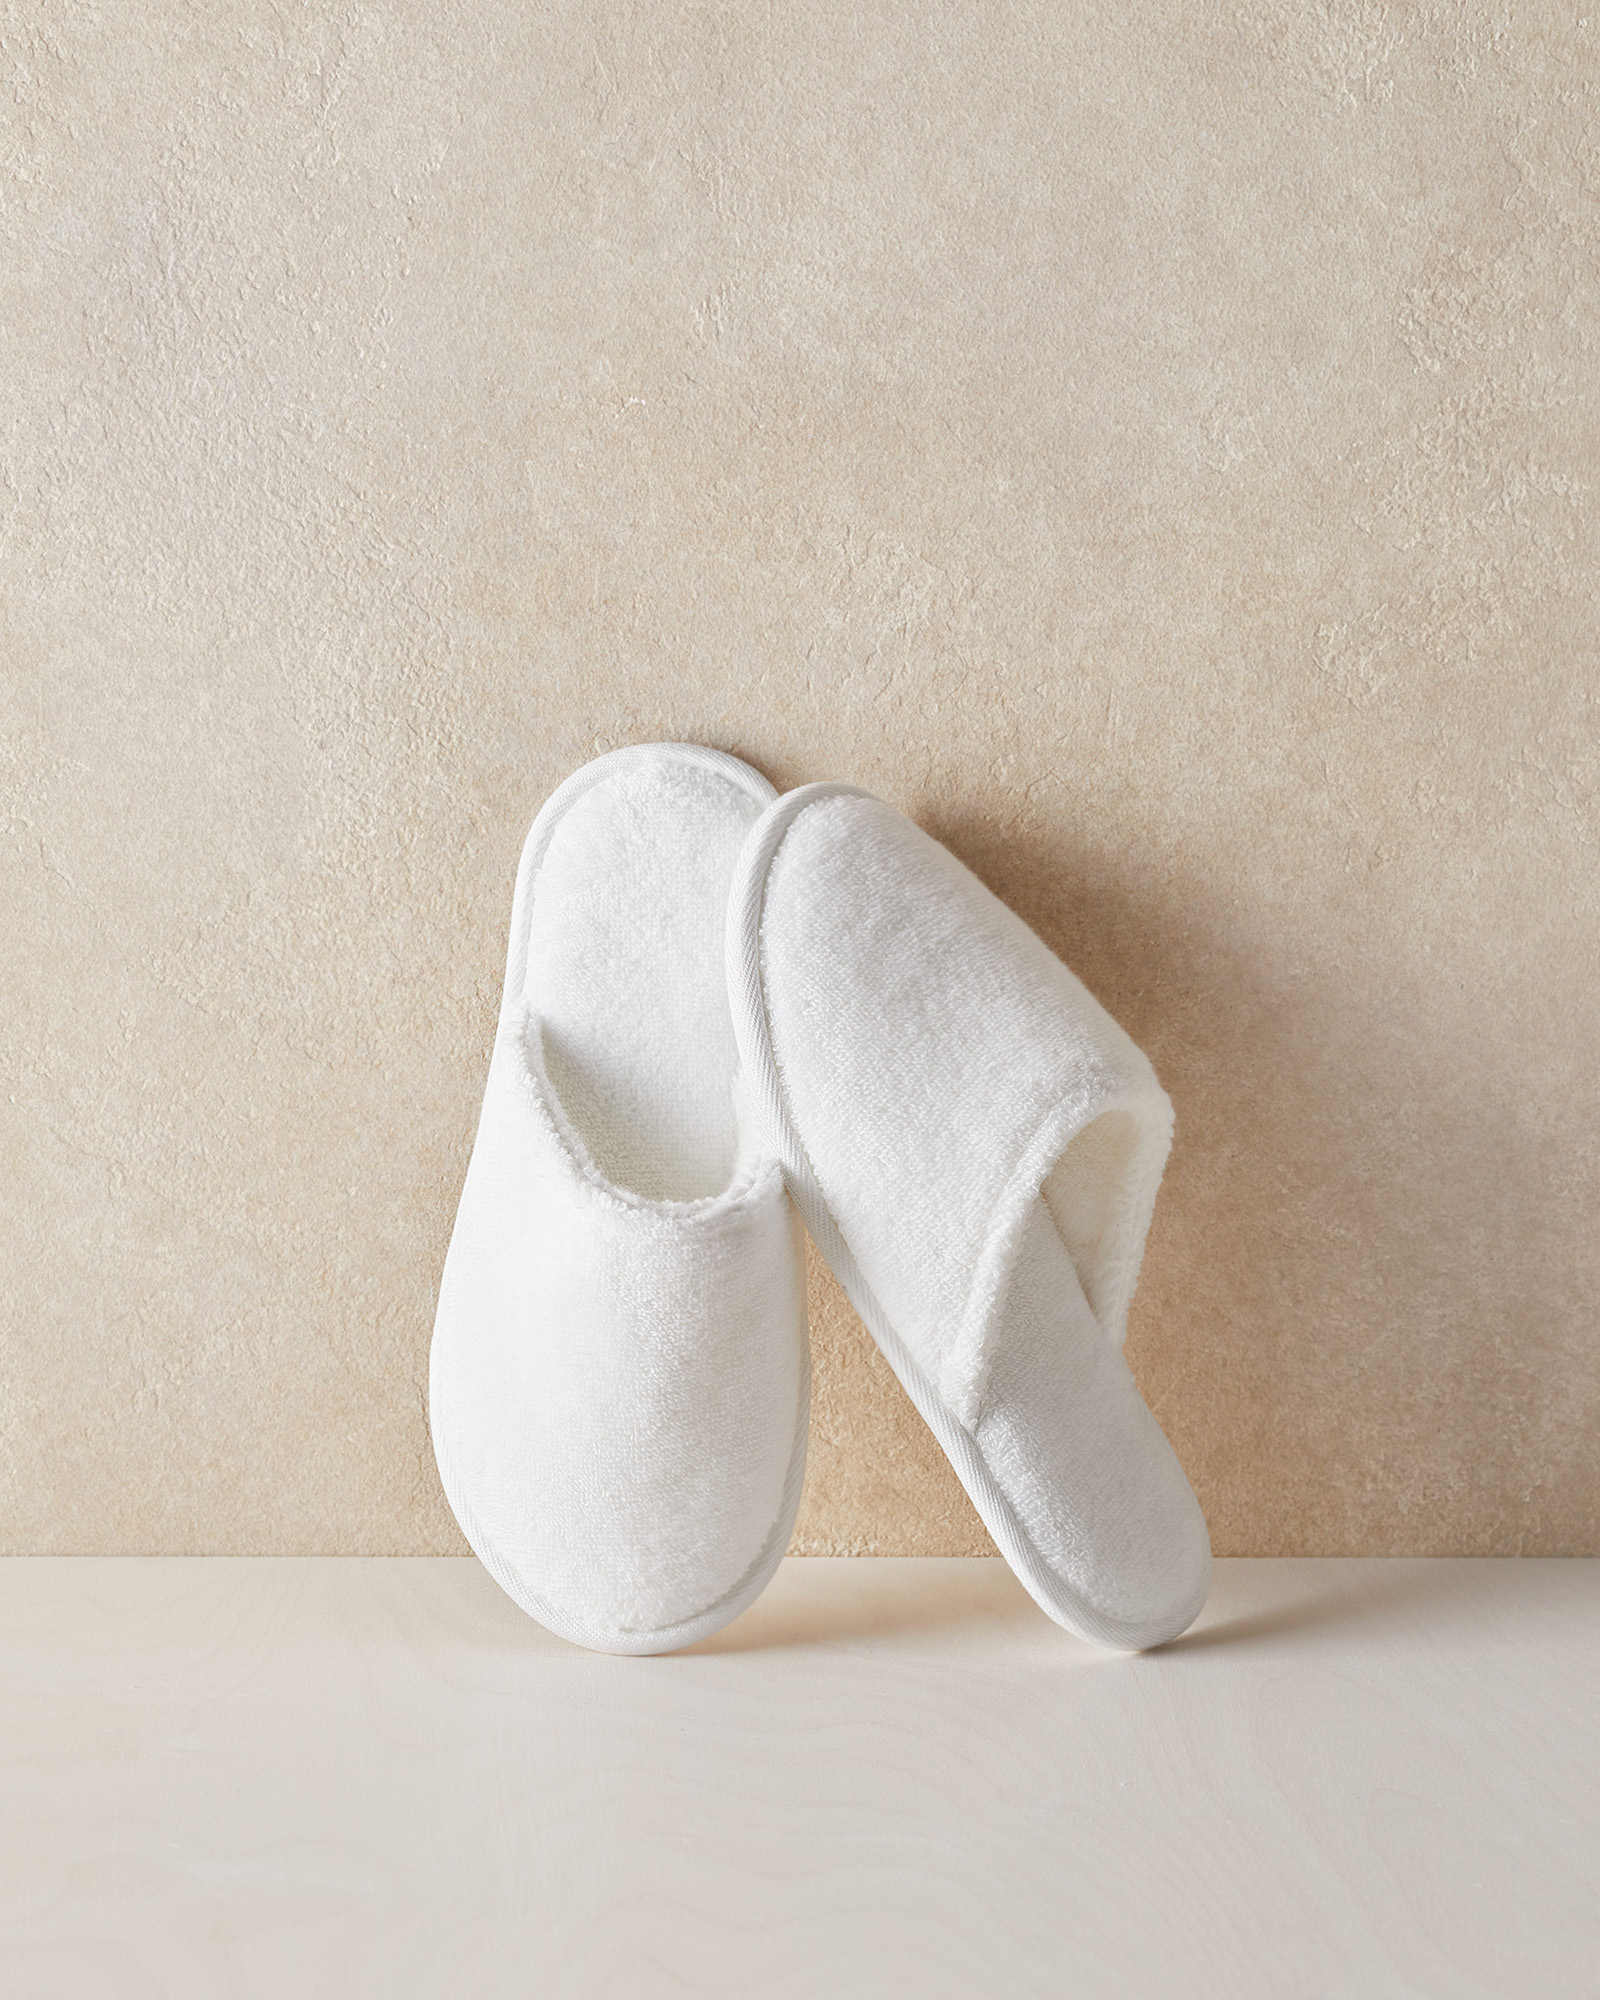 Talbots Plush Slippers - White - Small